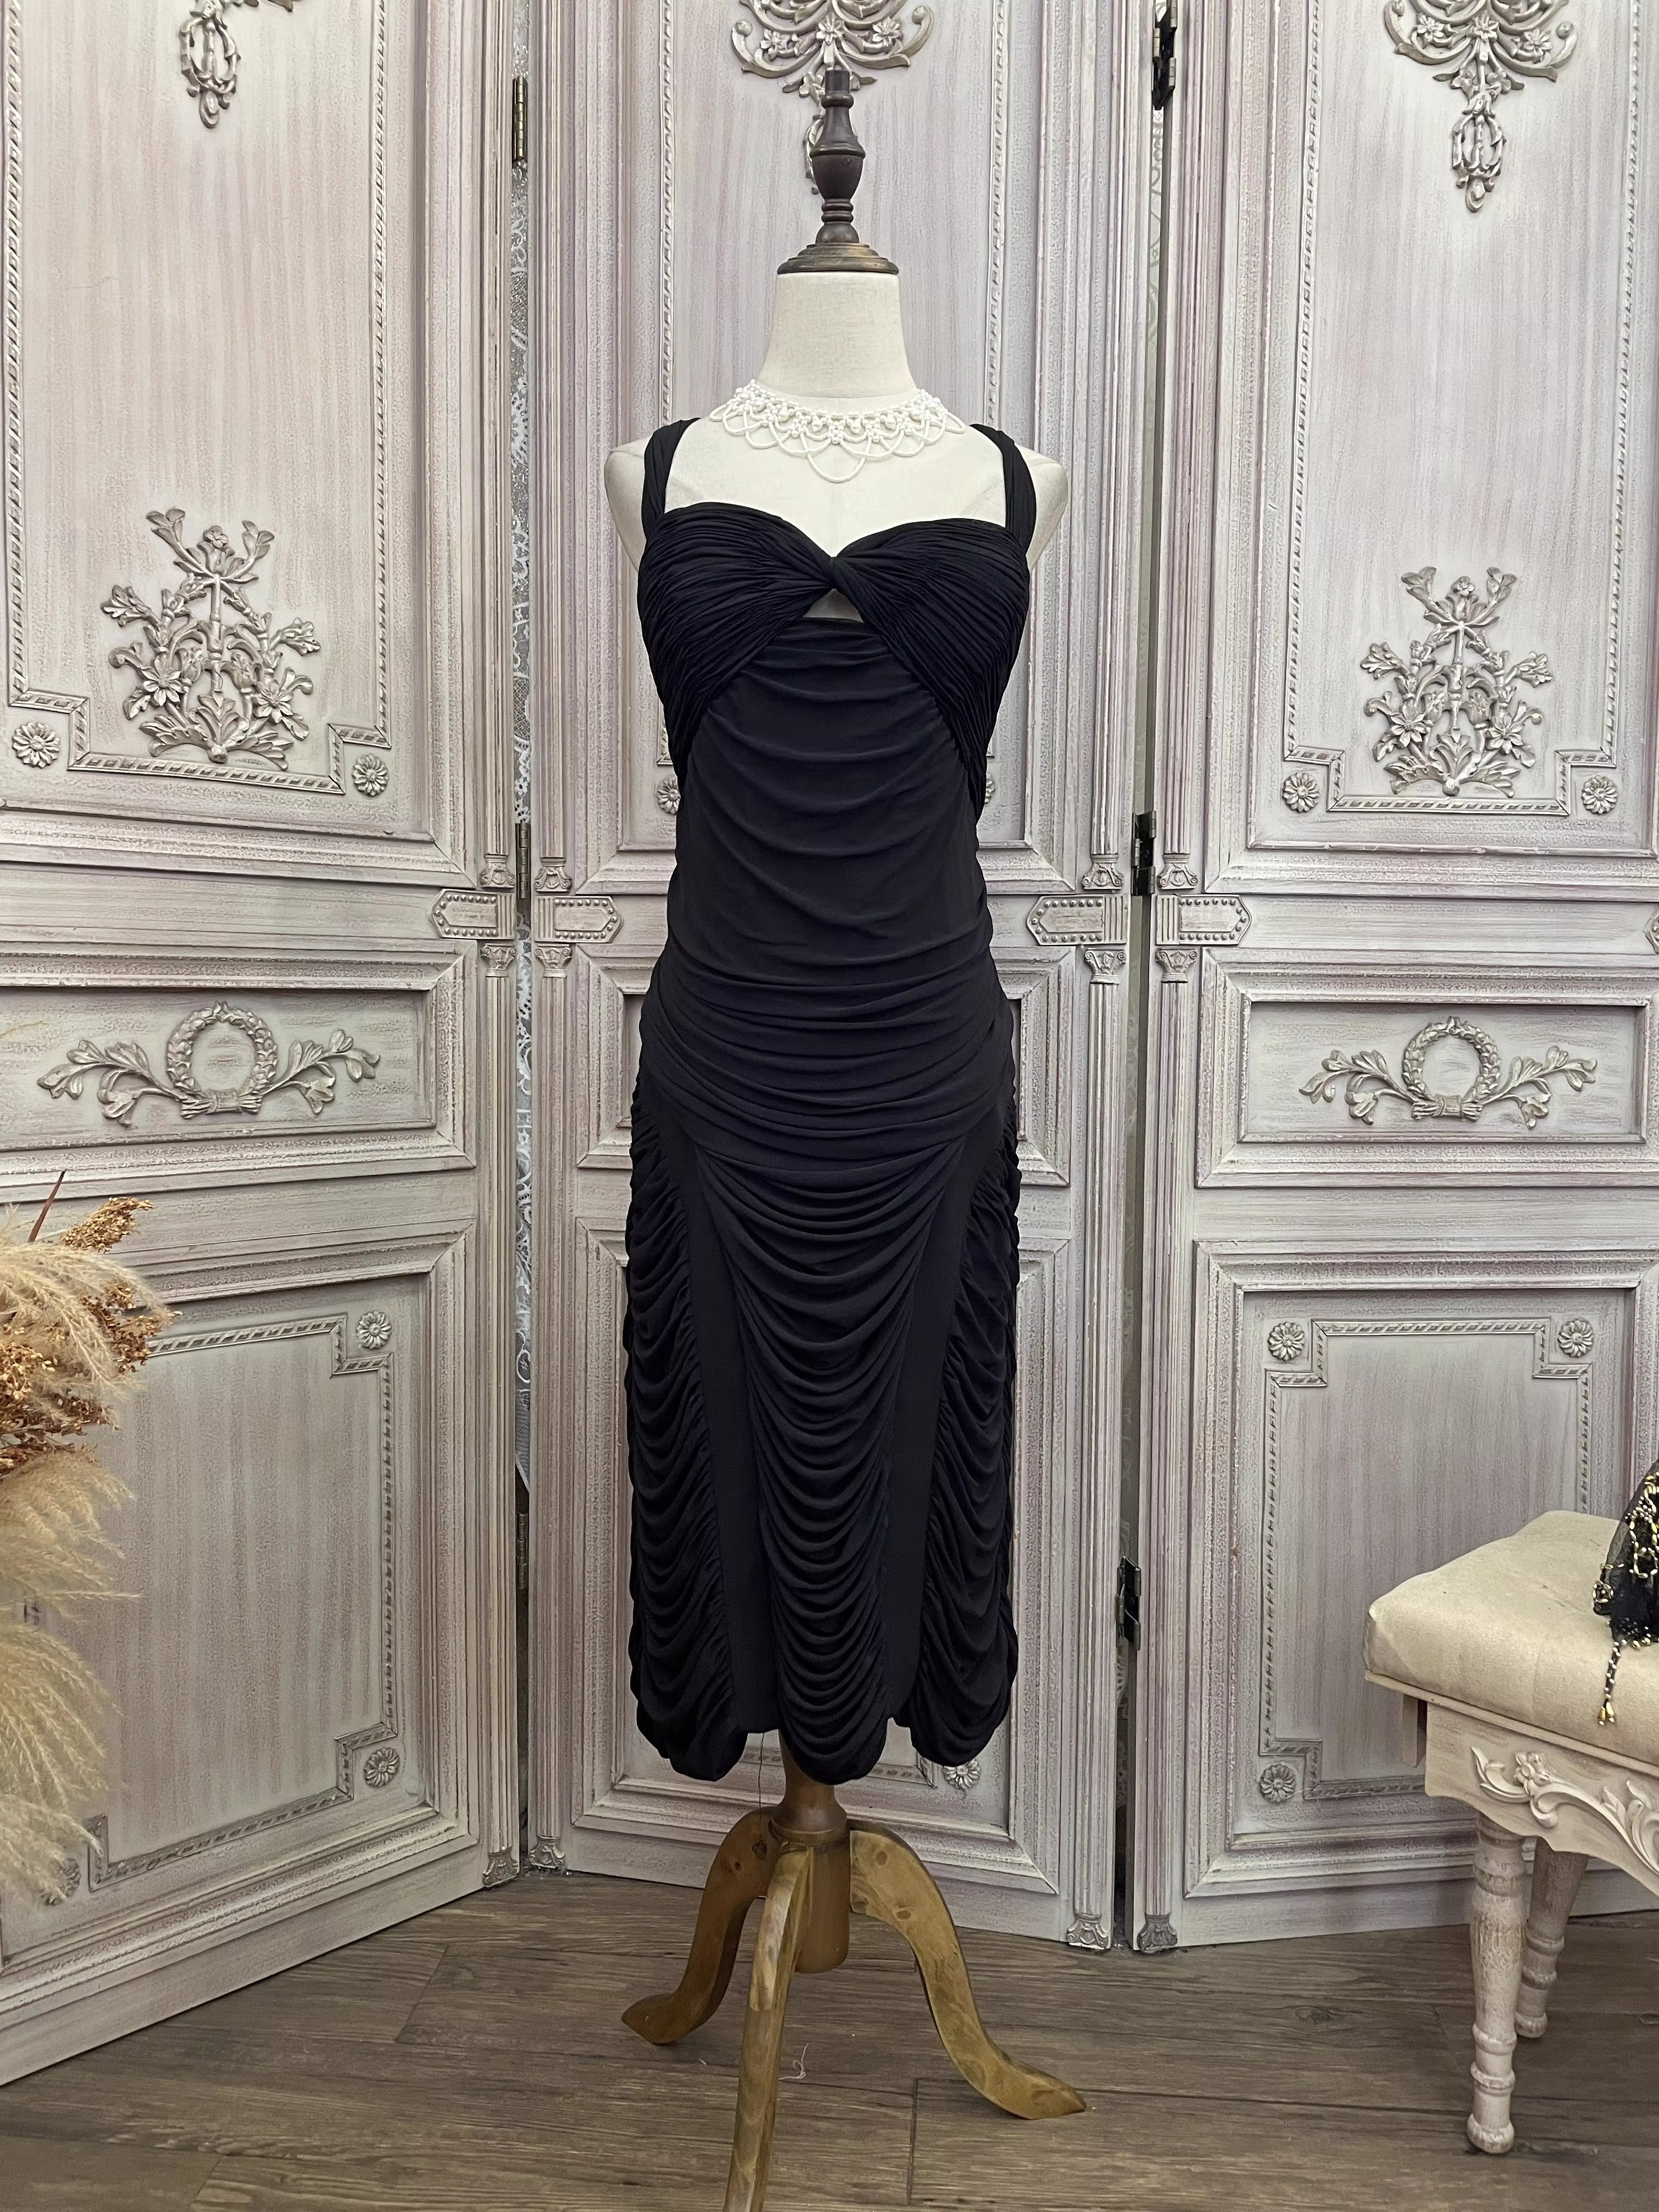 कालो सुरुचिपूर्ण प्लीटेड सेक्सी कस्टम होलो ड्रेस (6)